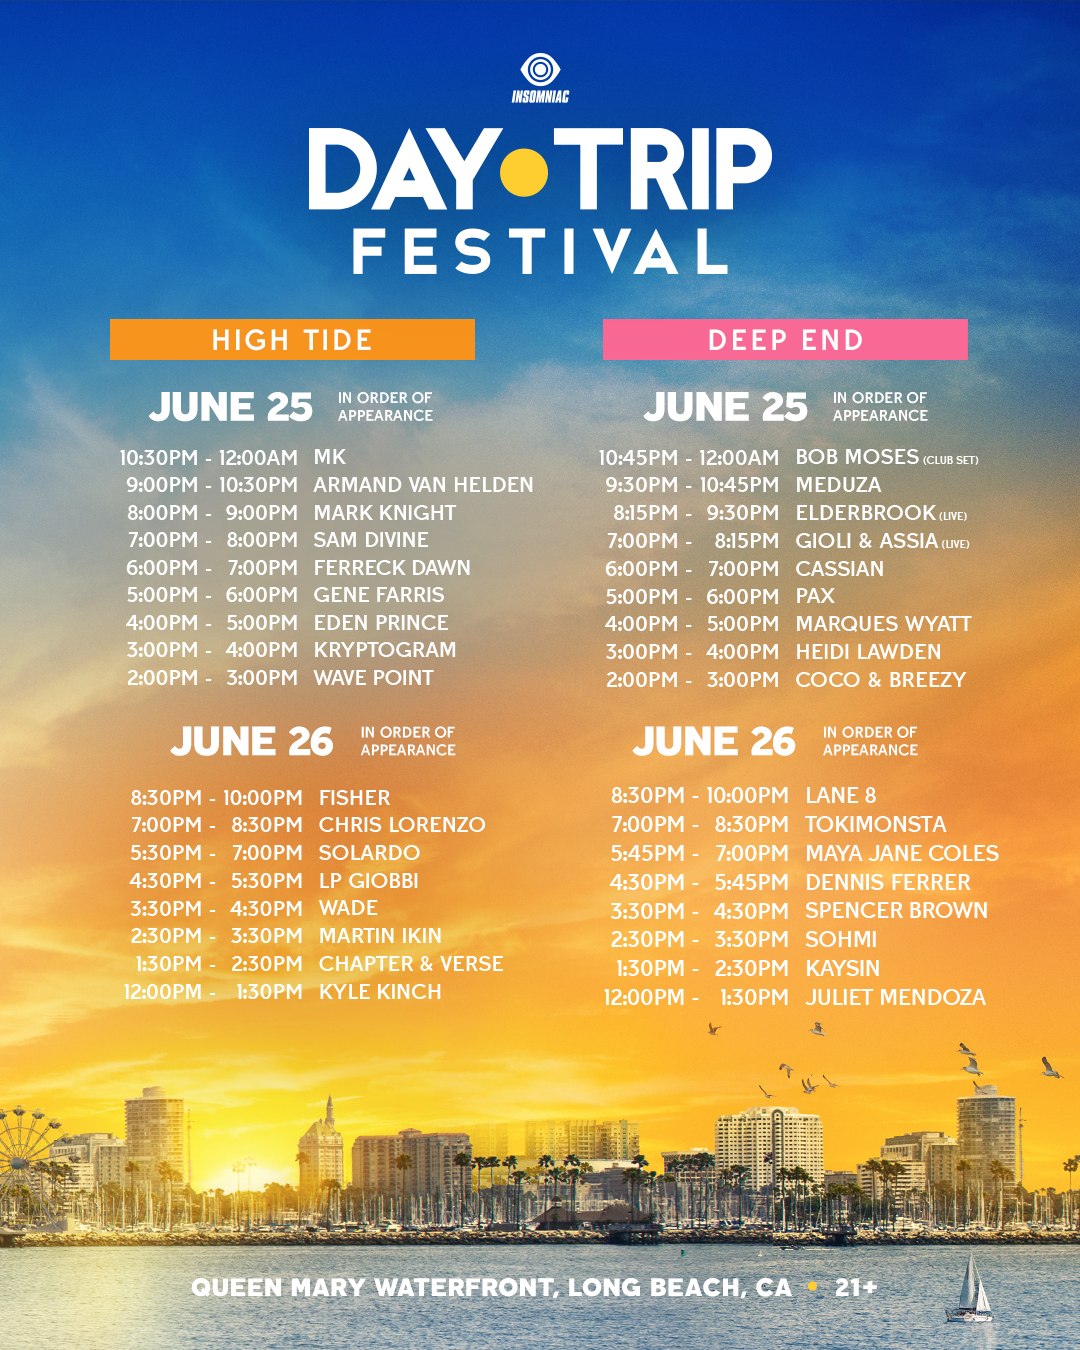 Day Trip Festival set times